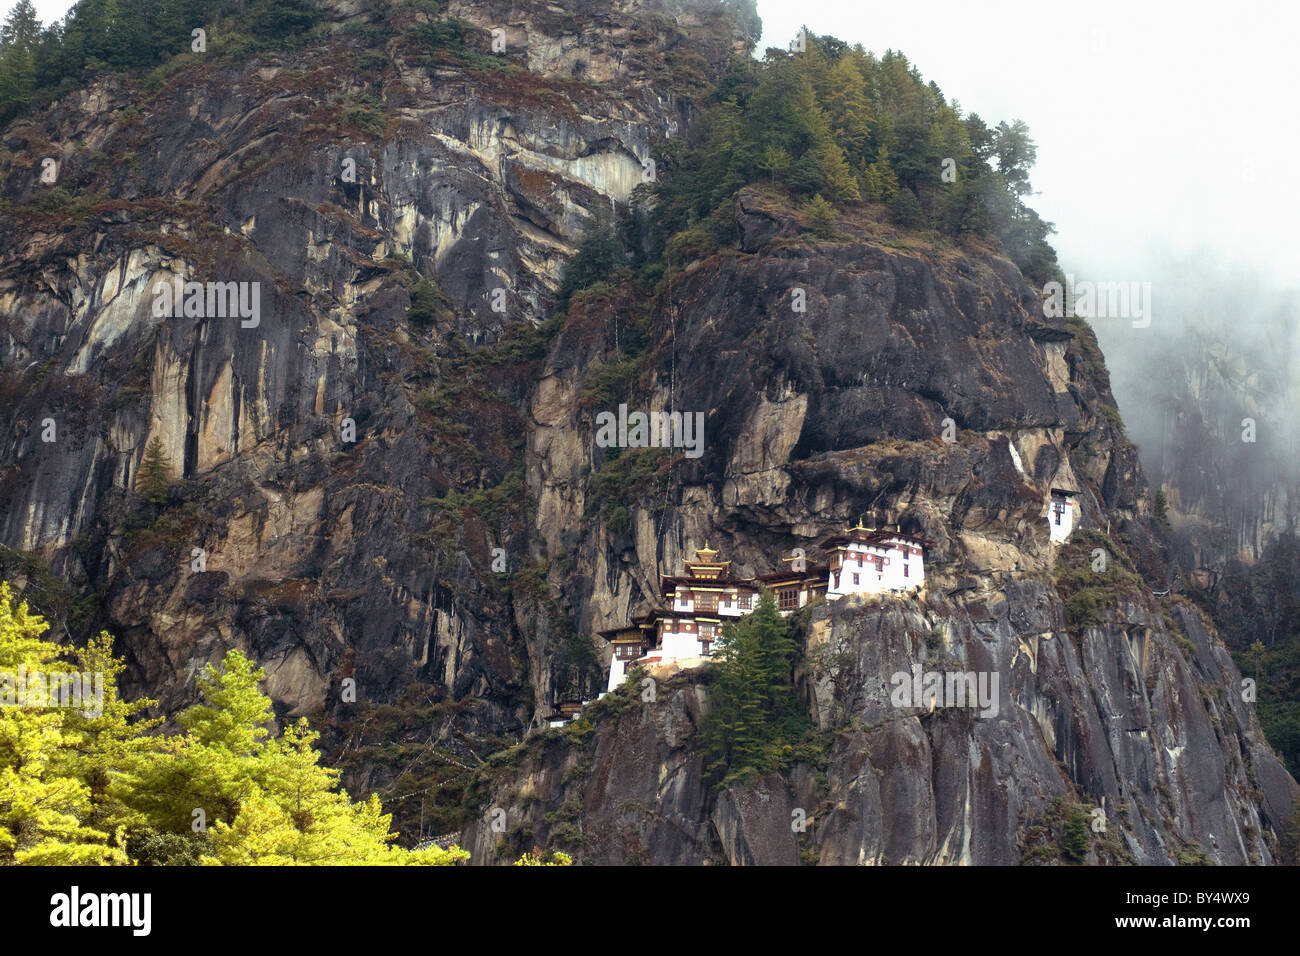 Tiger's Nest, o Taktsang, un monasterio budista, espectacularmente situado en lo alto de un acantilado en Bhután Foto de stock